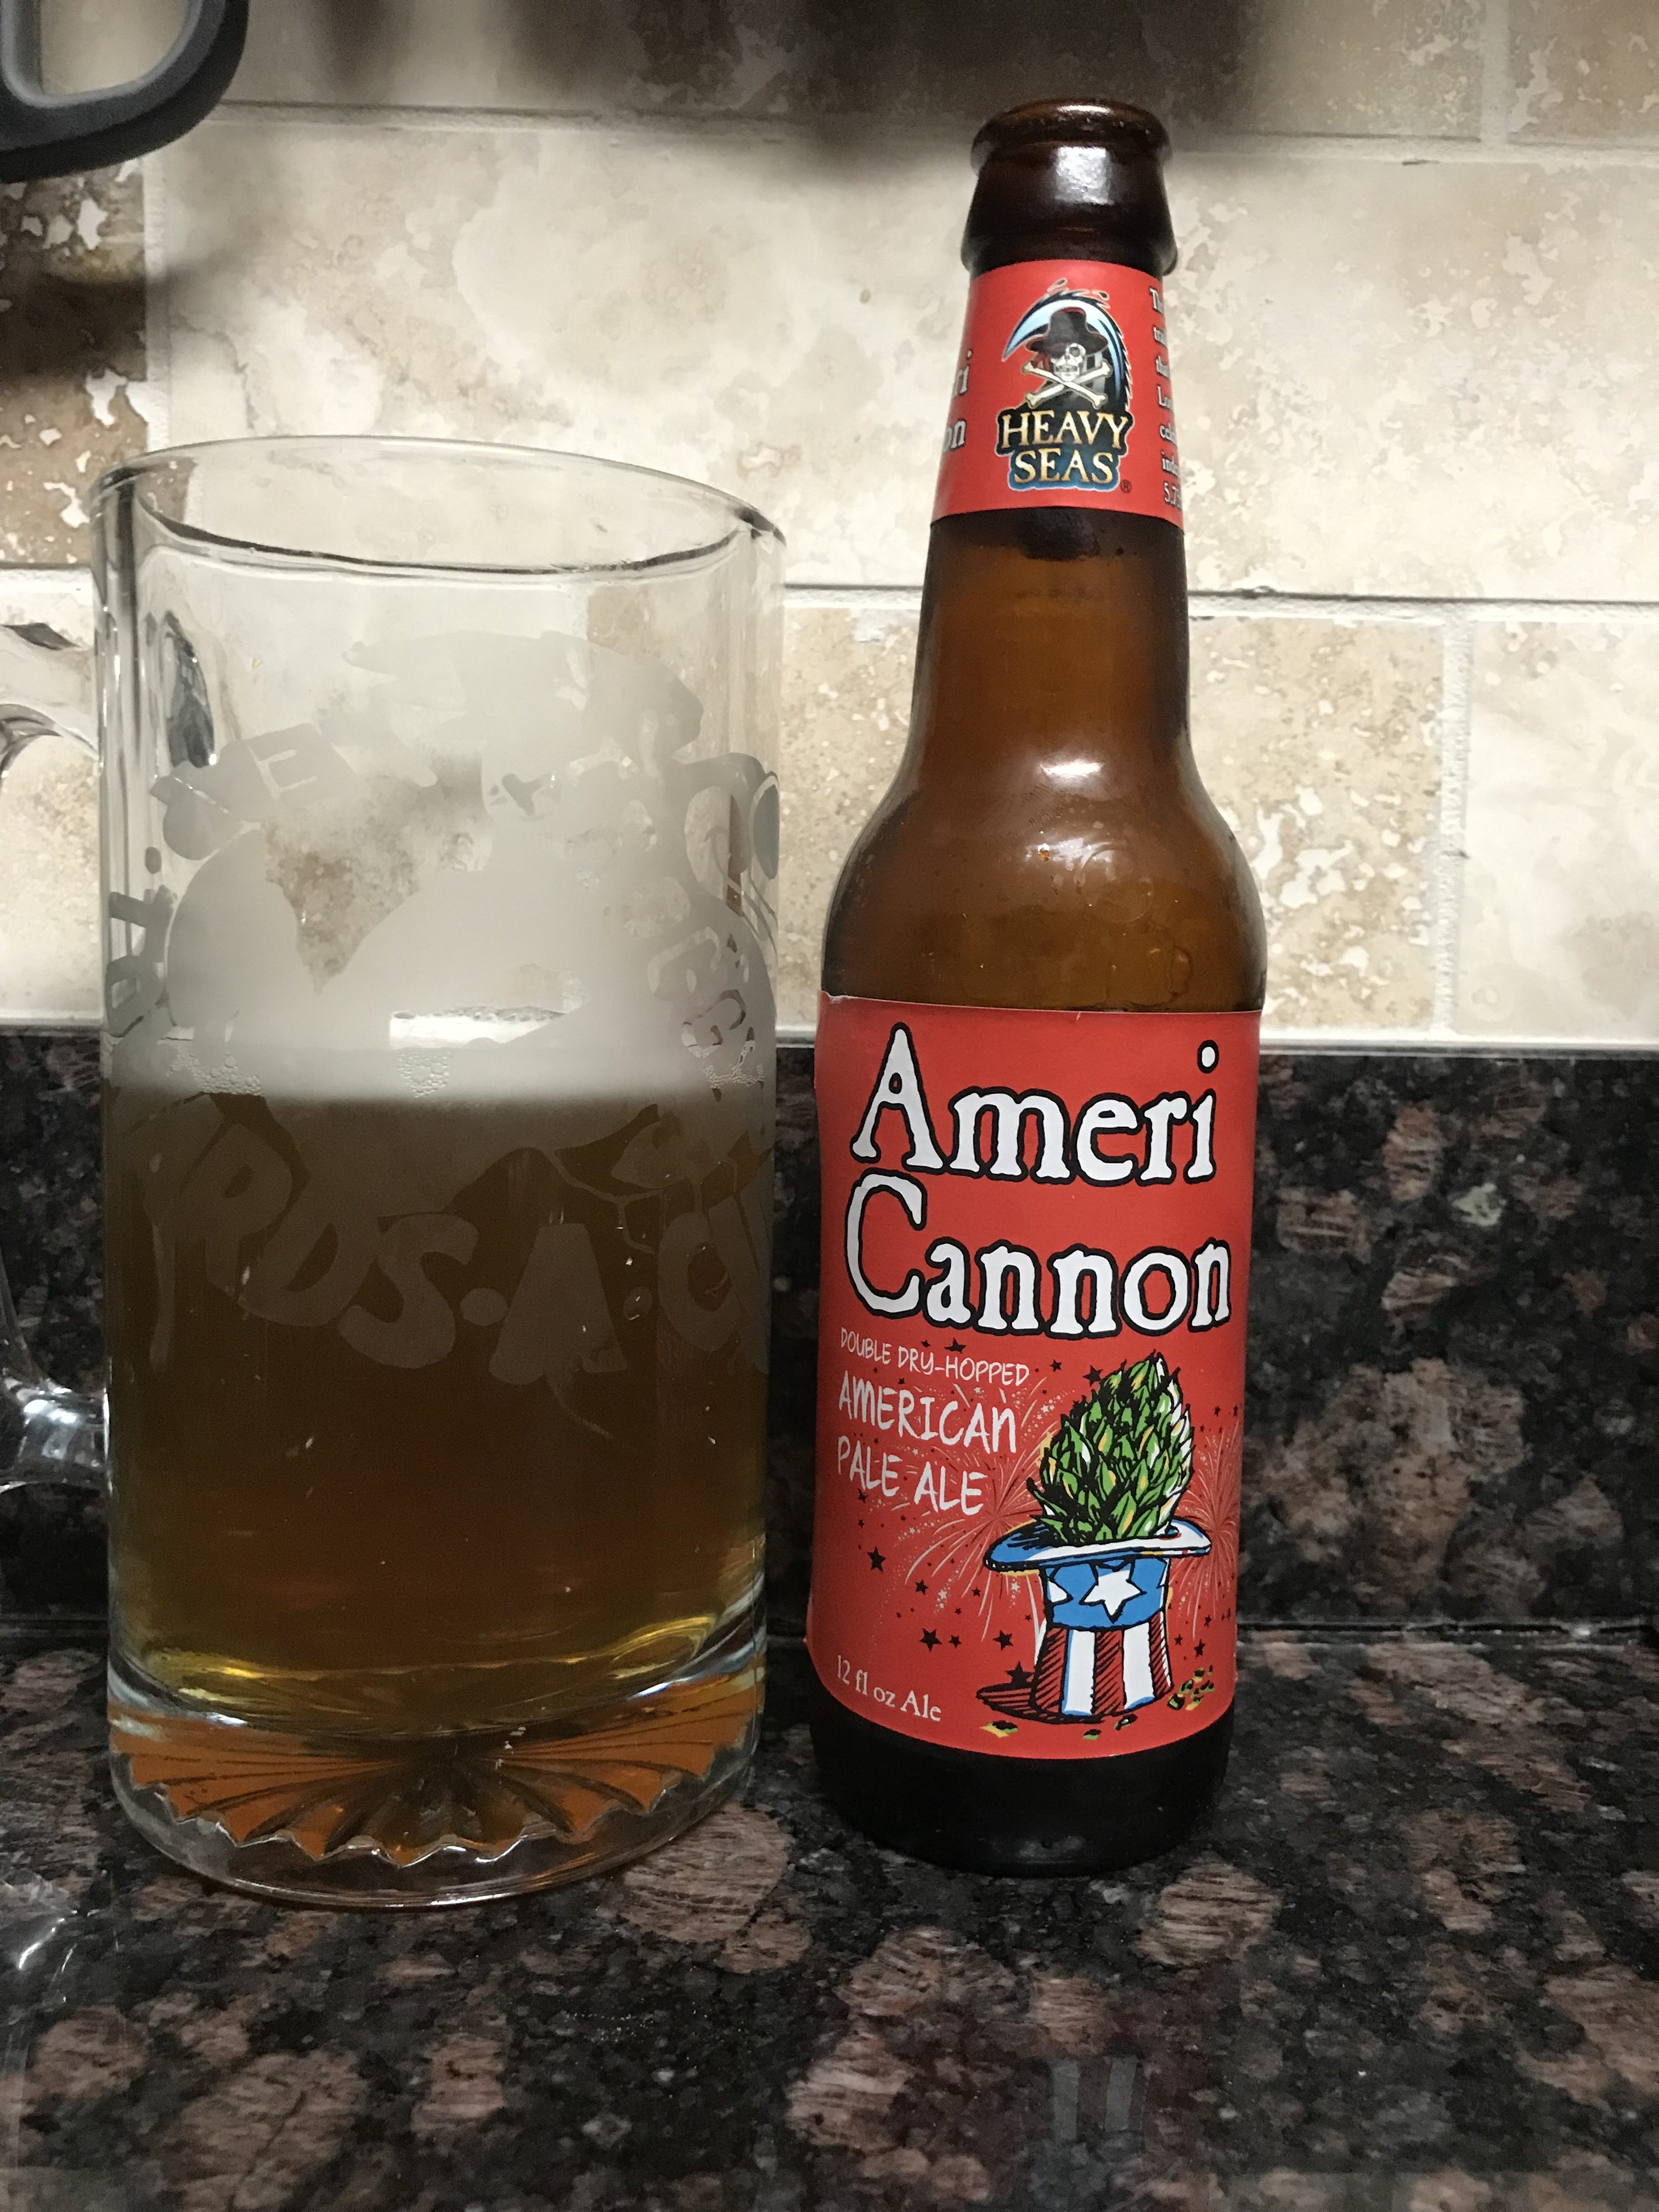 Ameri Cannon